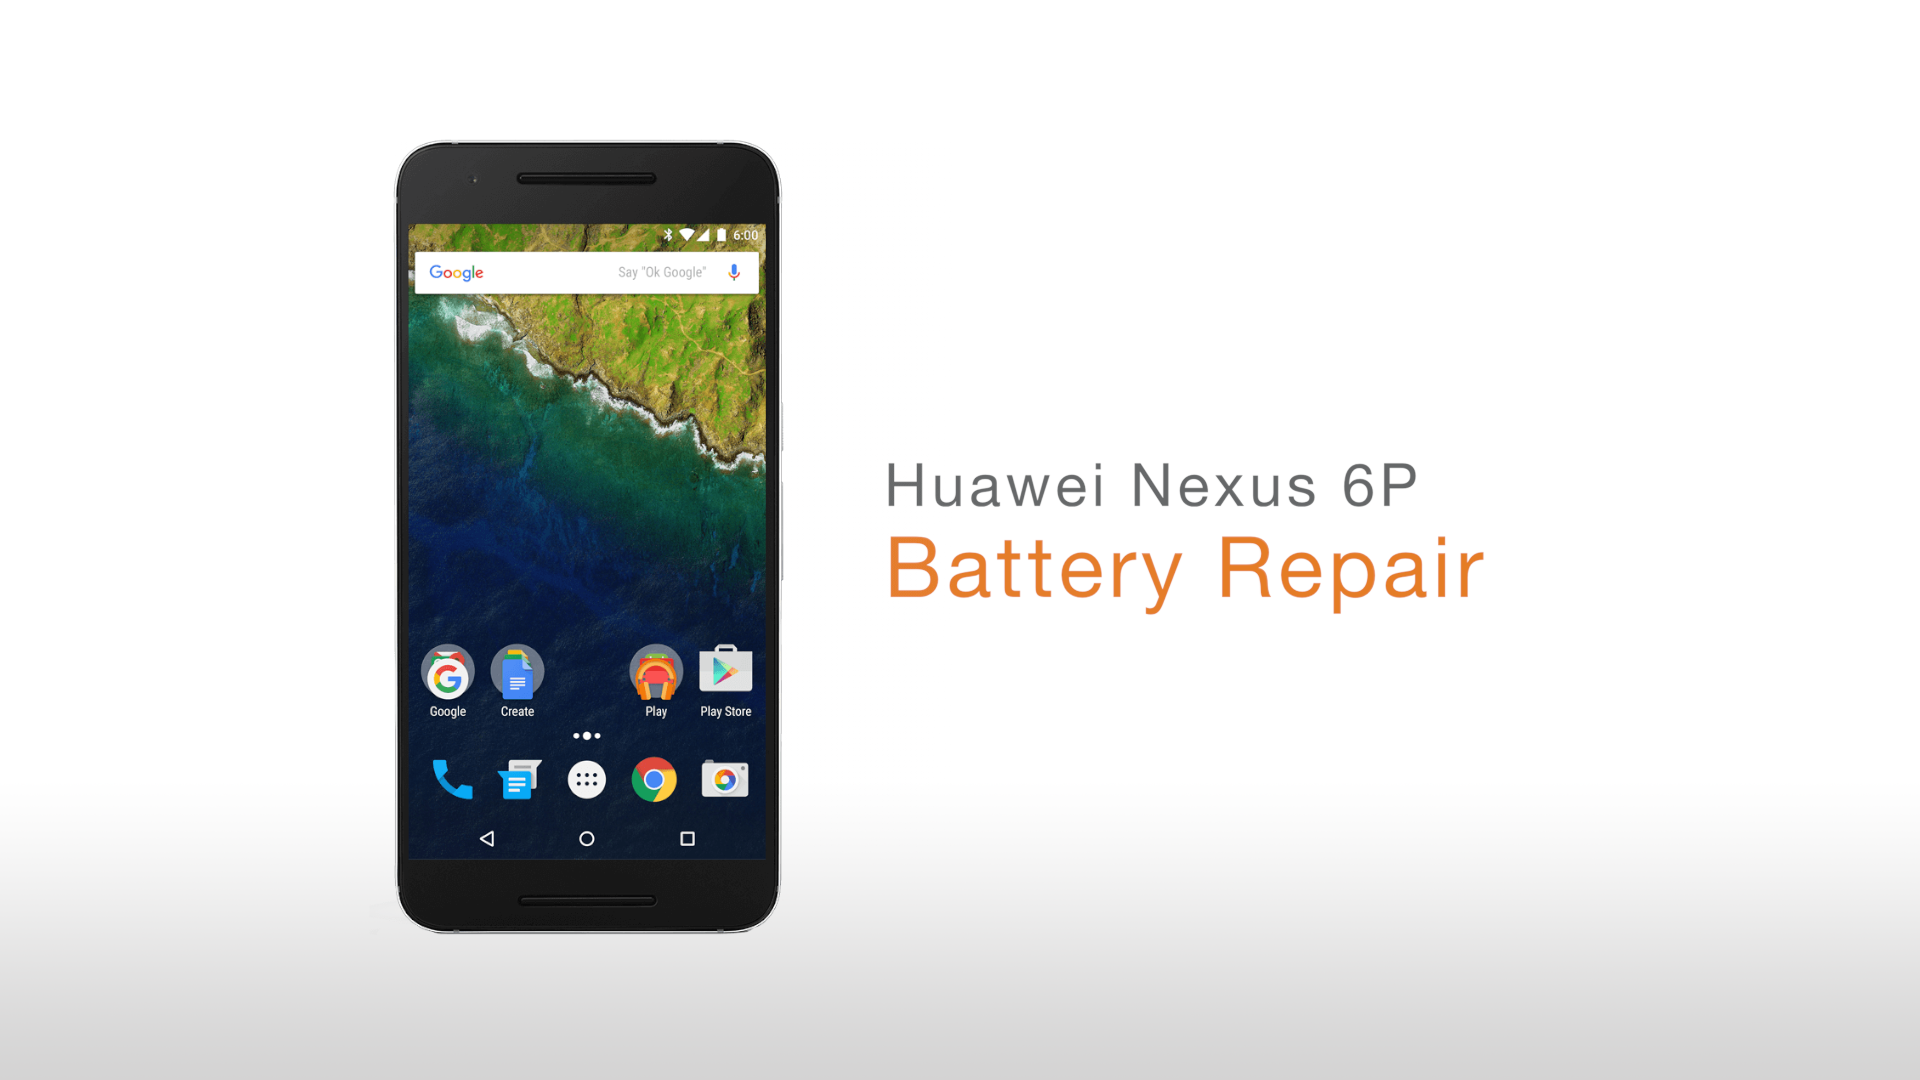 Huawei Nexus 6P Battery Repair